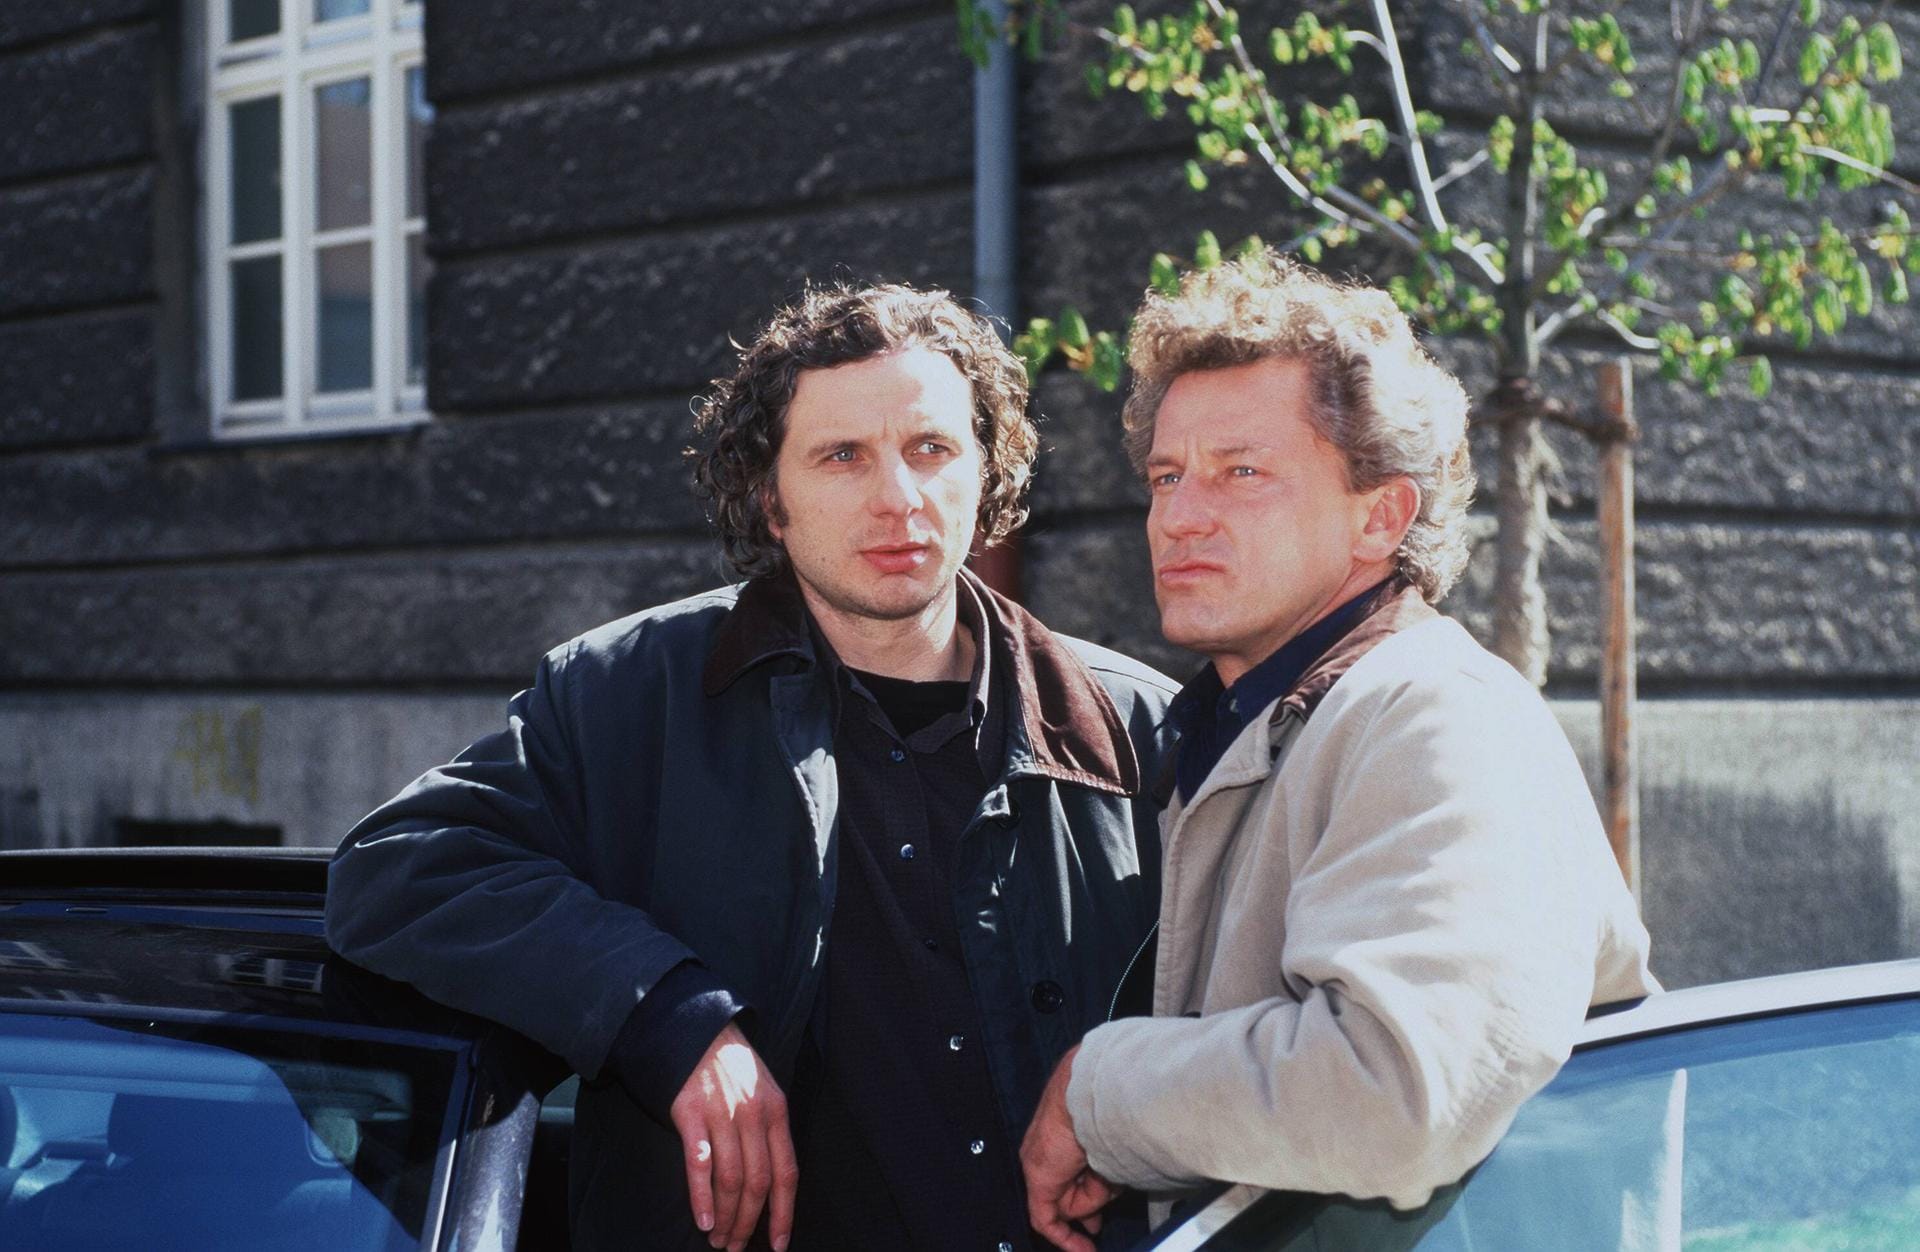 Die Locken wehen bei beiden im Wind - im "Tatort: Der Teufel" aus dem Jahr 1997.